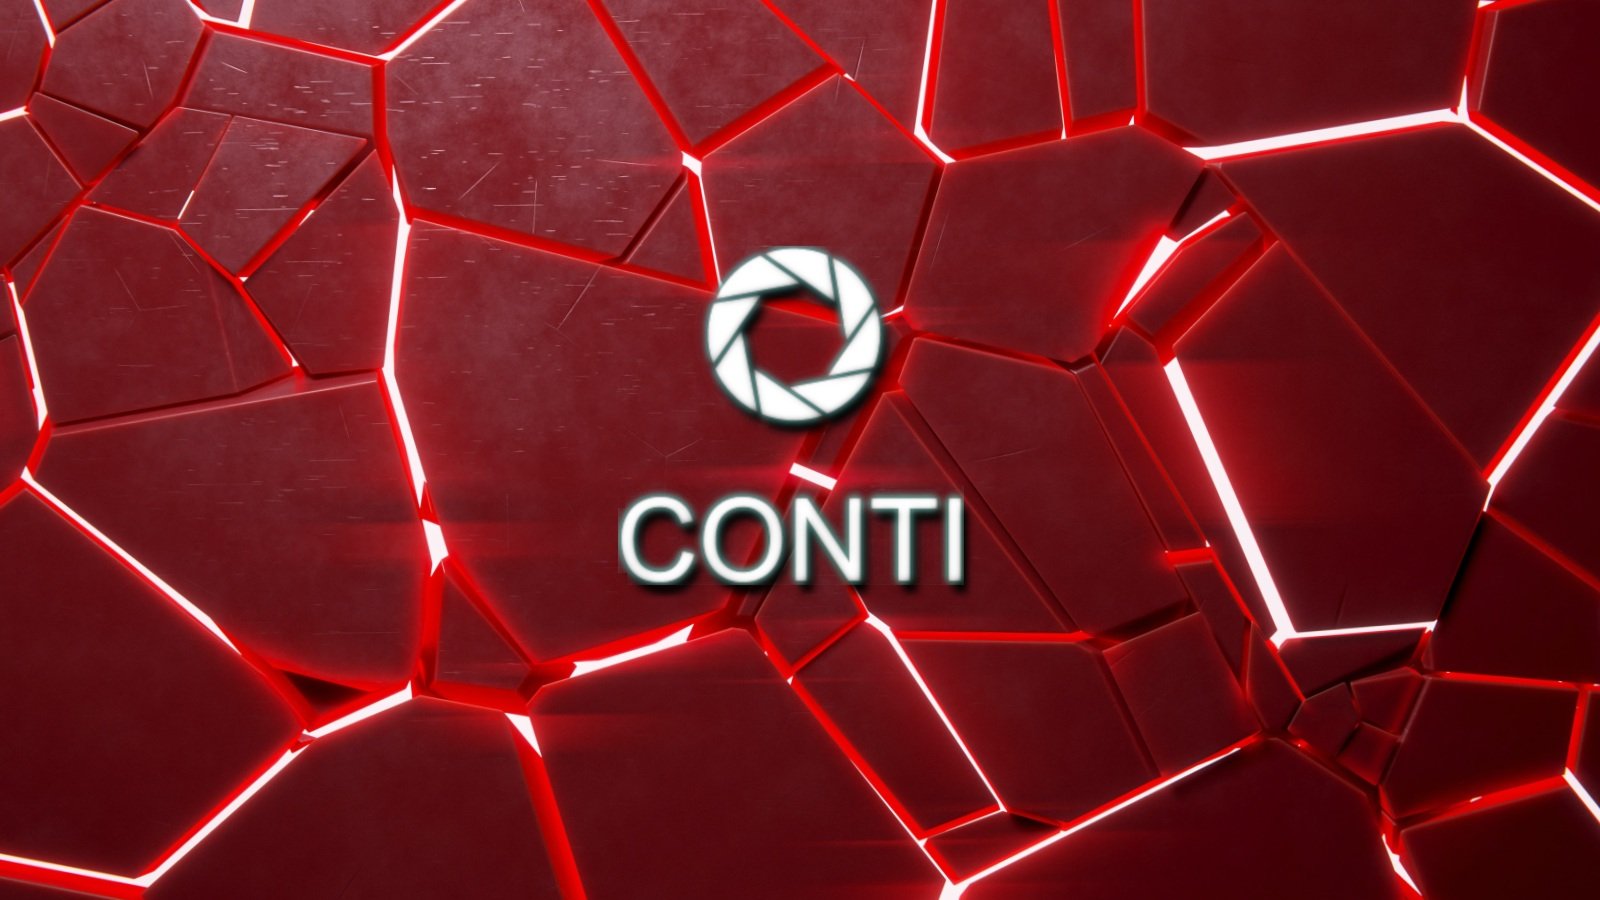 Conti